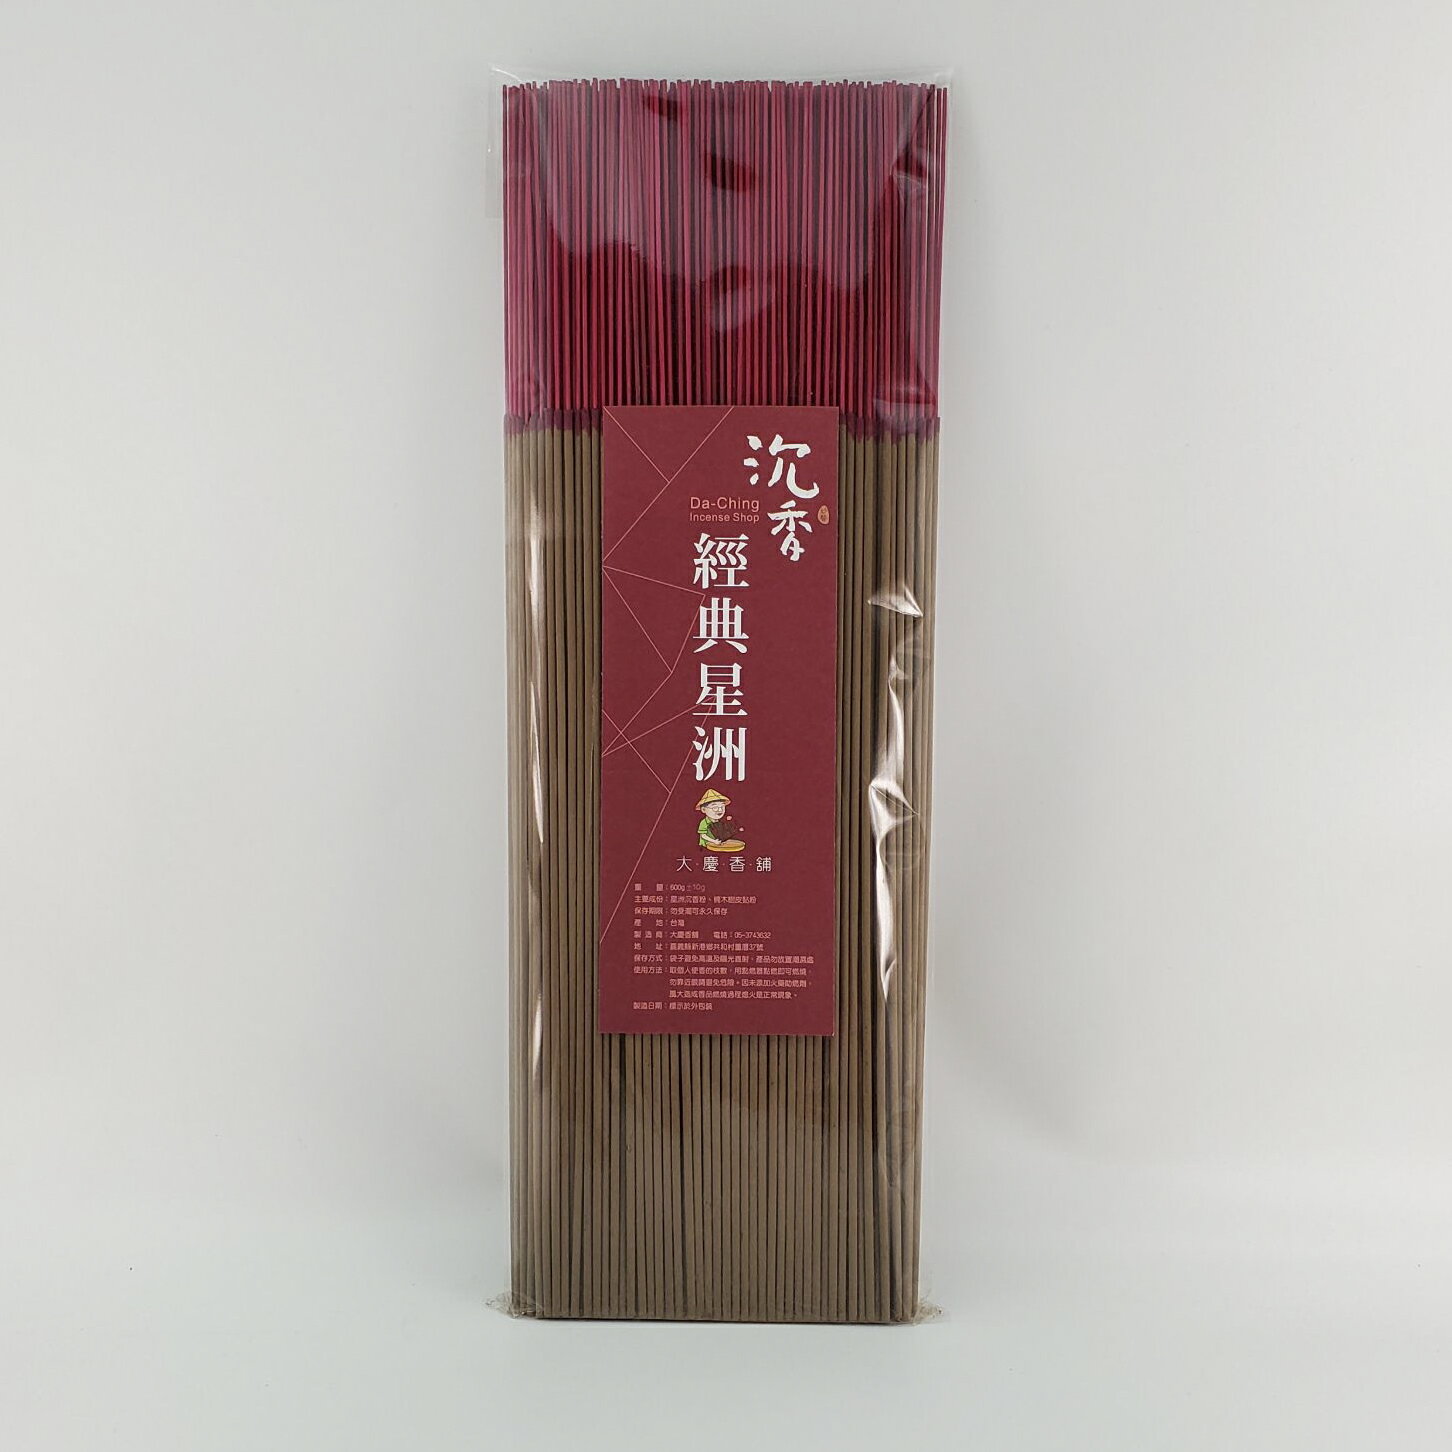 立香 沉香類 經典星洲沉香 (一尺三)台灣製造 天然 安全 環保